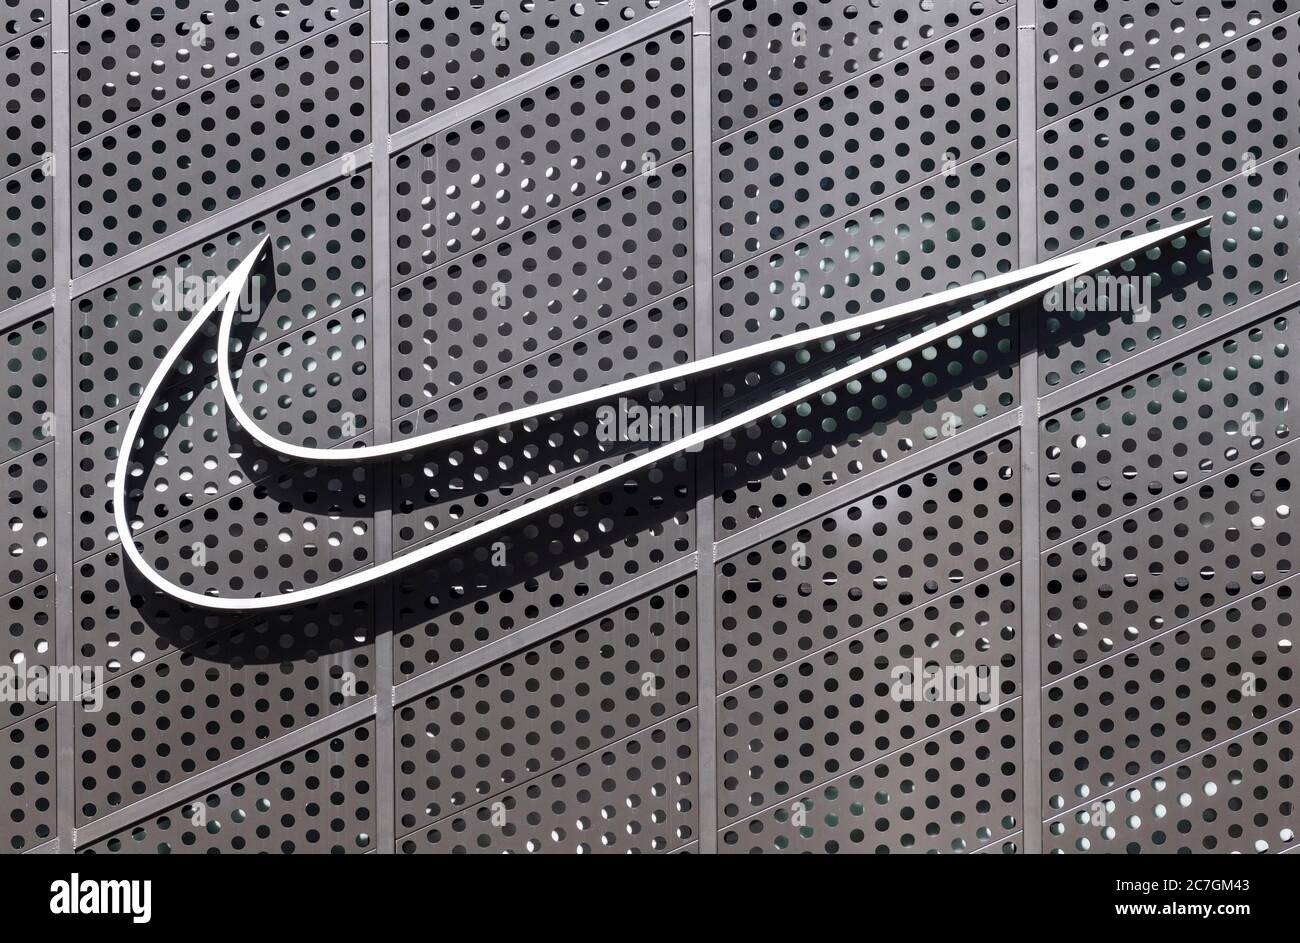 Latón álbum de recortes Por ahí Hong Kong, China. 17 de julio de 2020. Logotipo de Nike de la Marca  multinacional estadounidense de ropa deportiva visto en Hong Kong. Crédito:  SOLA Images Limited/Alamy Live News Fotografía de stock -